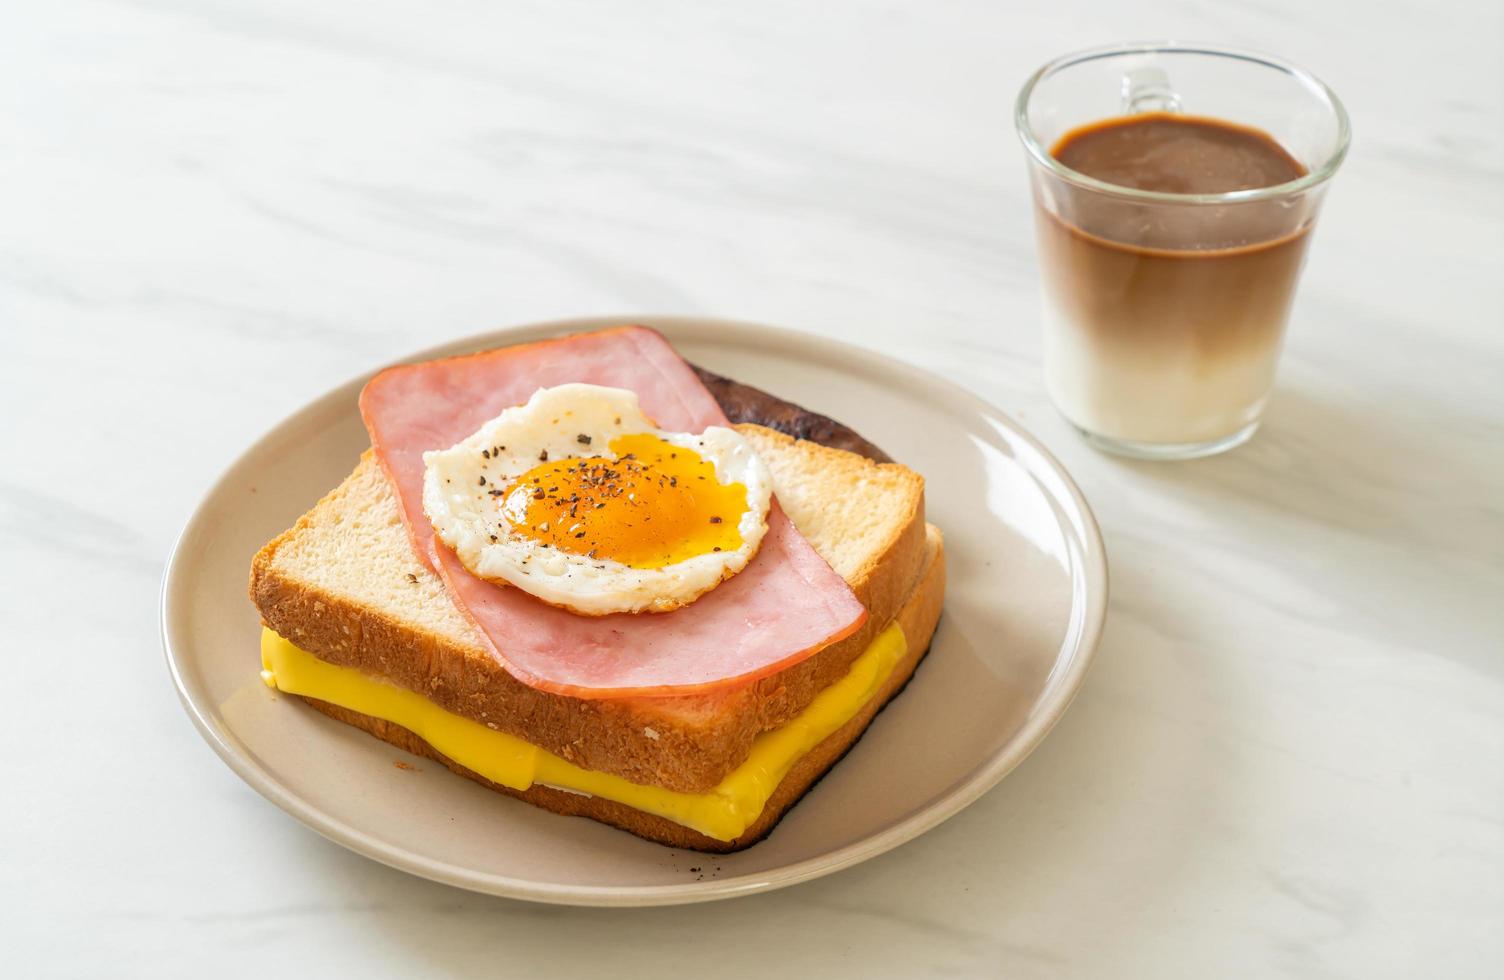 pane fatto in casa formaggio tostato condito con prosciutto e uovo fritto con salsiccia di maiale e caffè per colazione foto